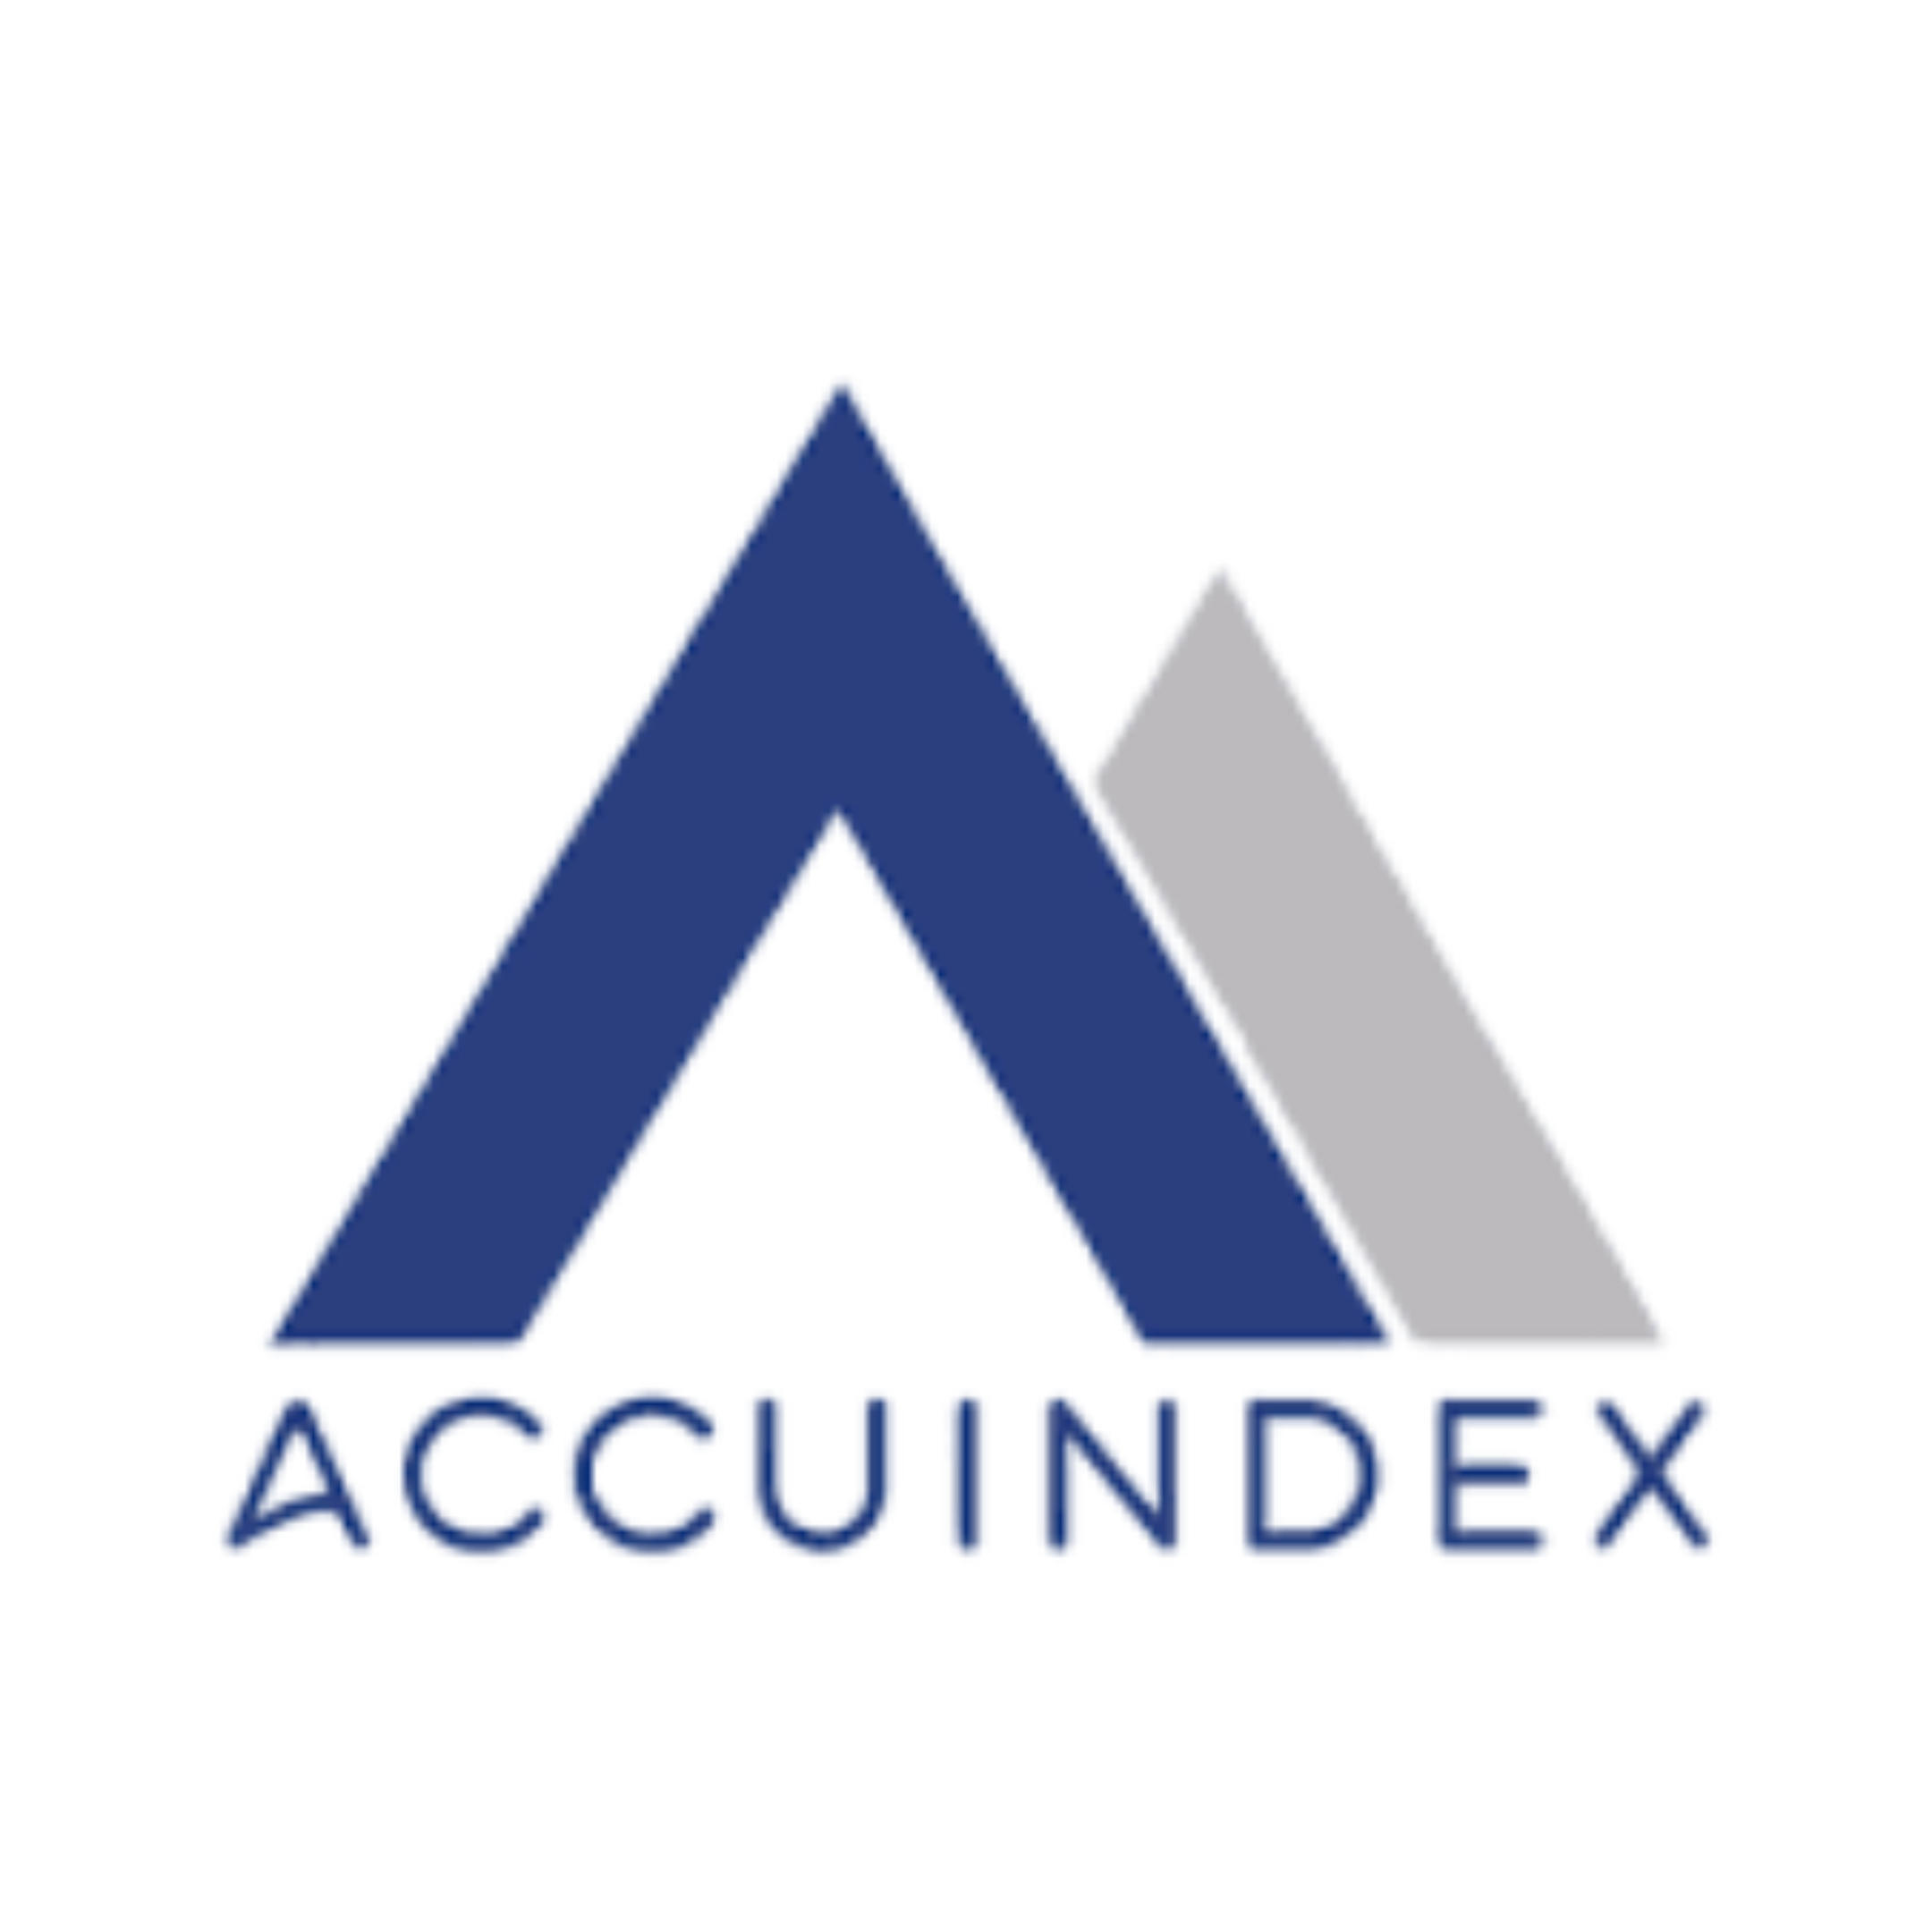 Accuindex Logo